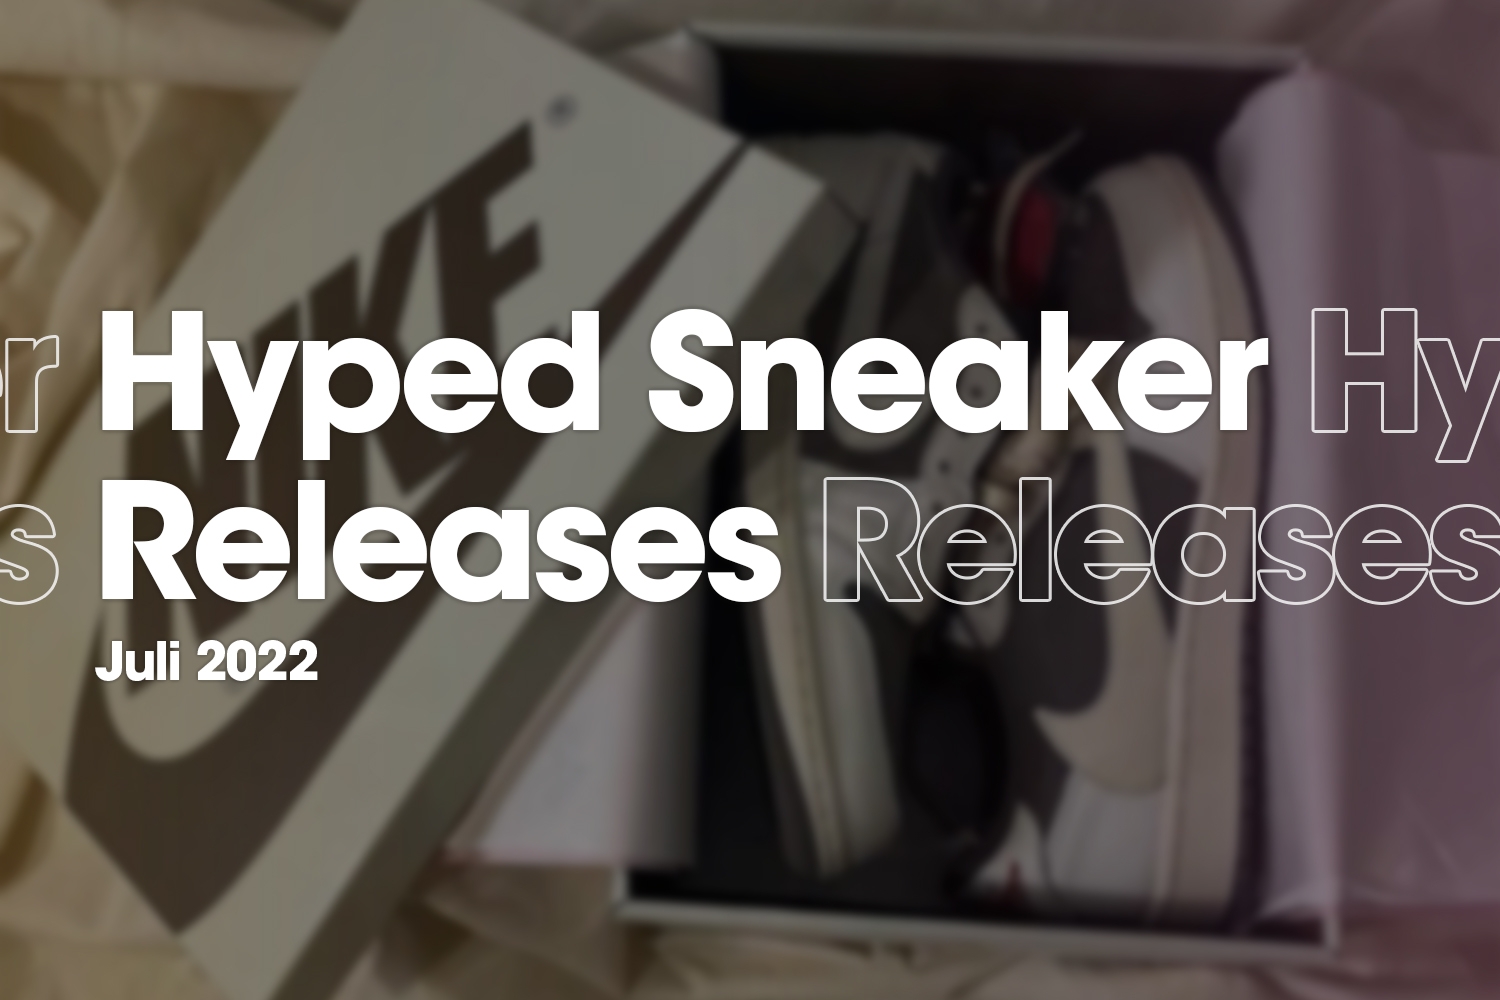 Hyped Sneaker Releases van juli 2022